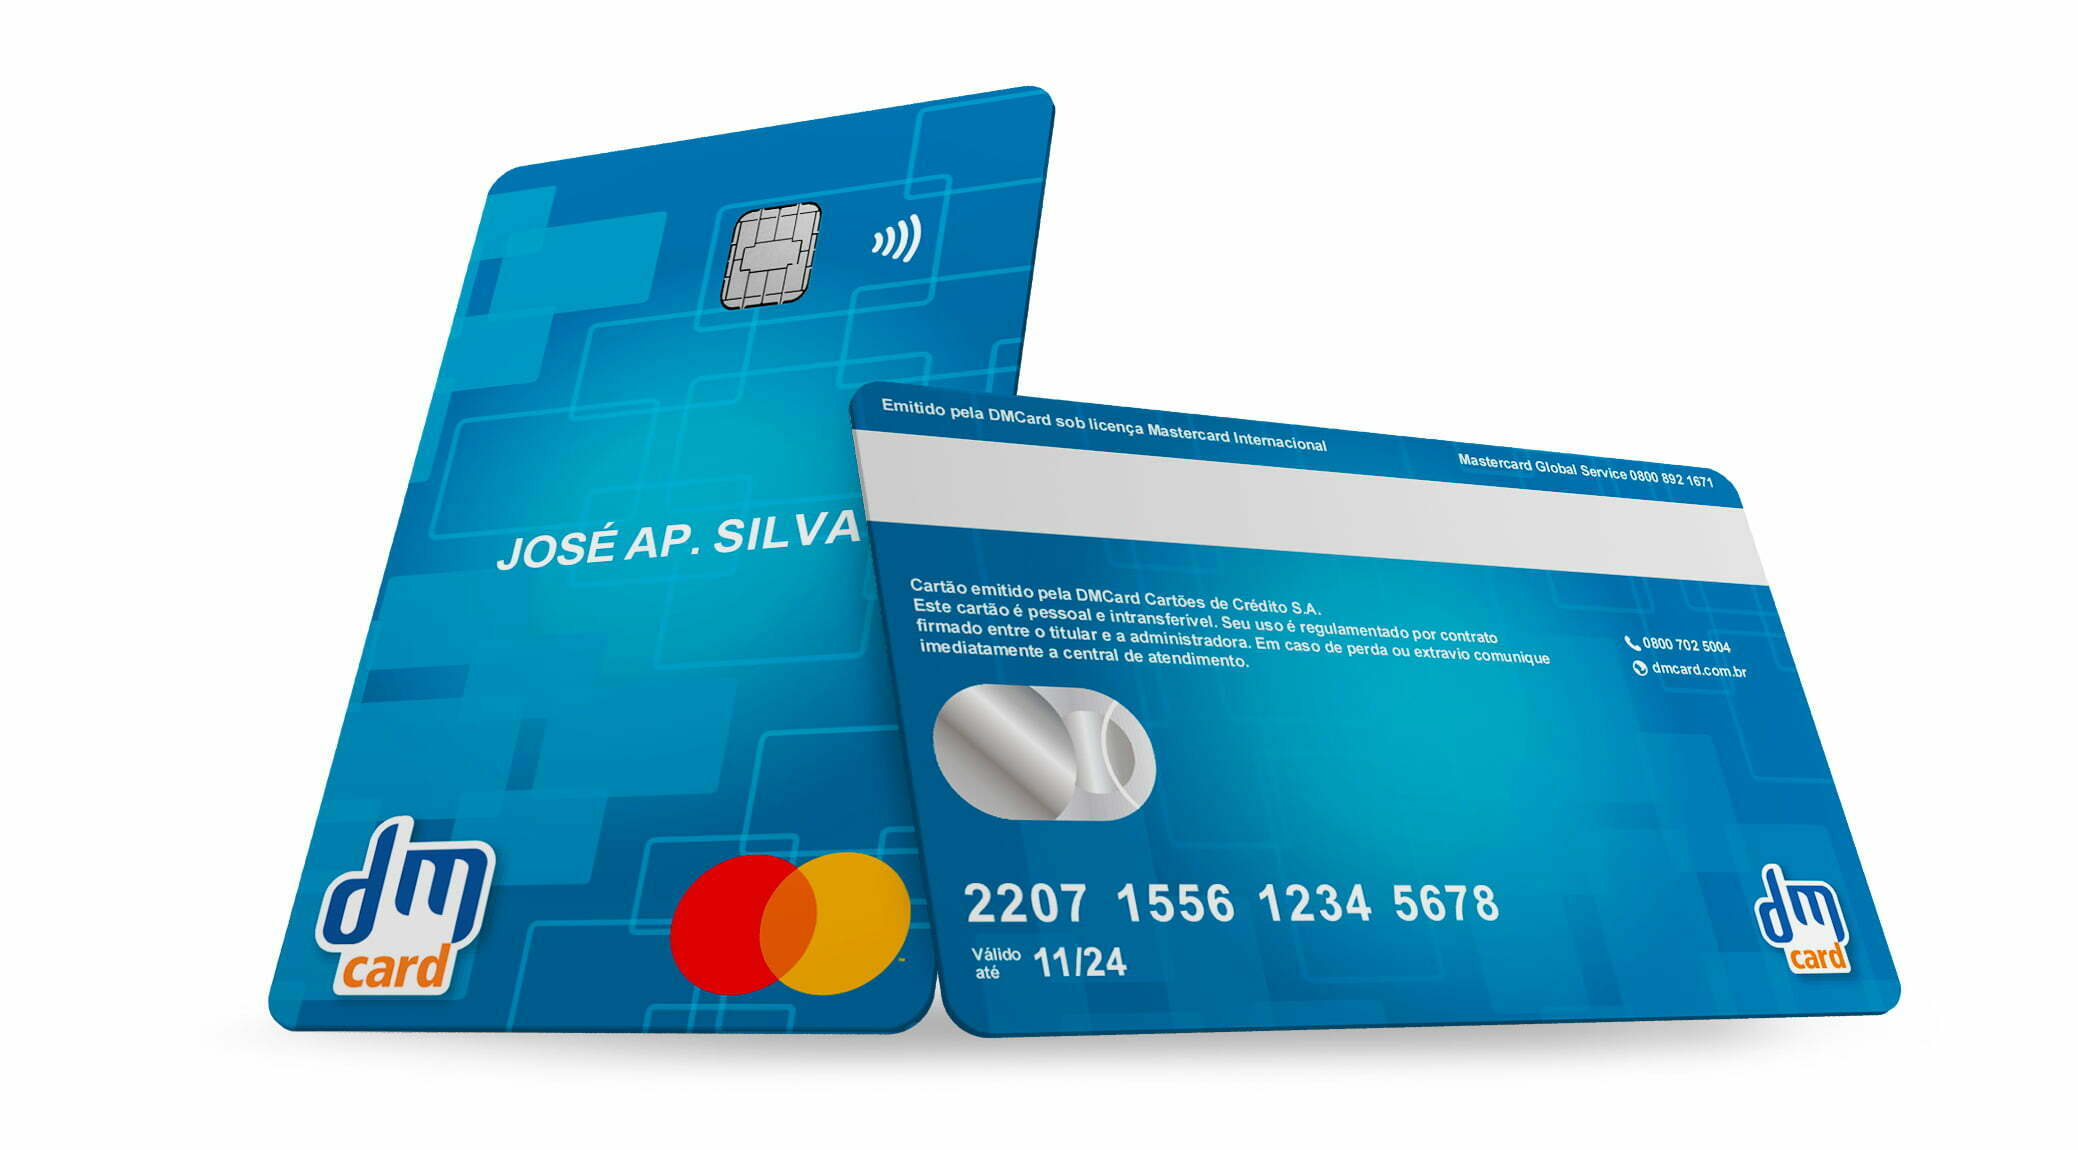 DMCard entra no mercado de cartões de crédito bandeirados com foco na inclusão financeira